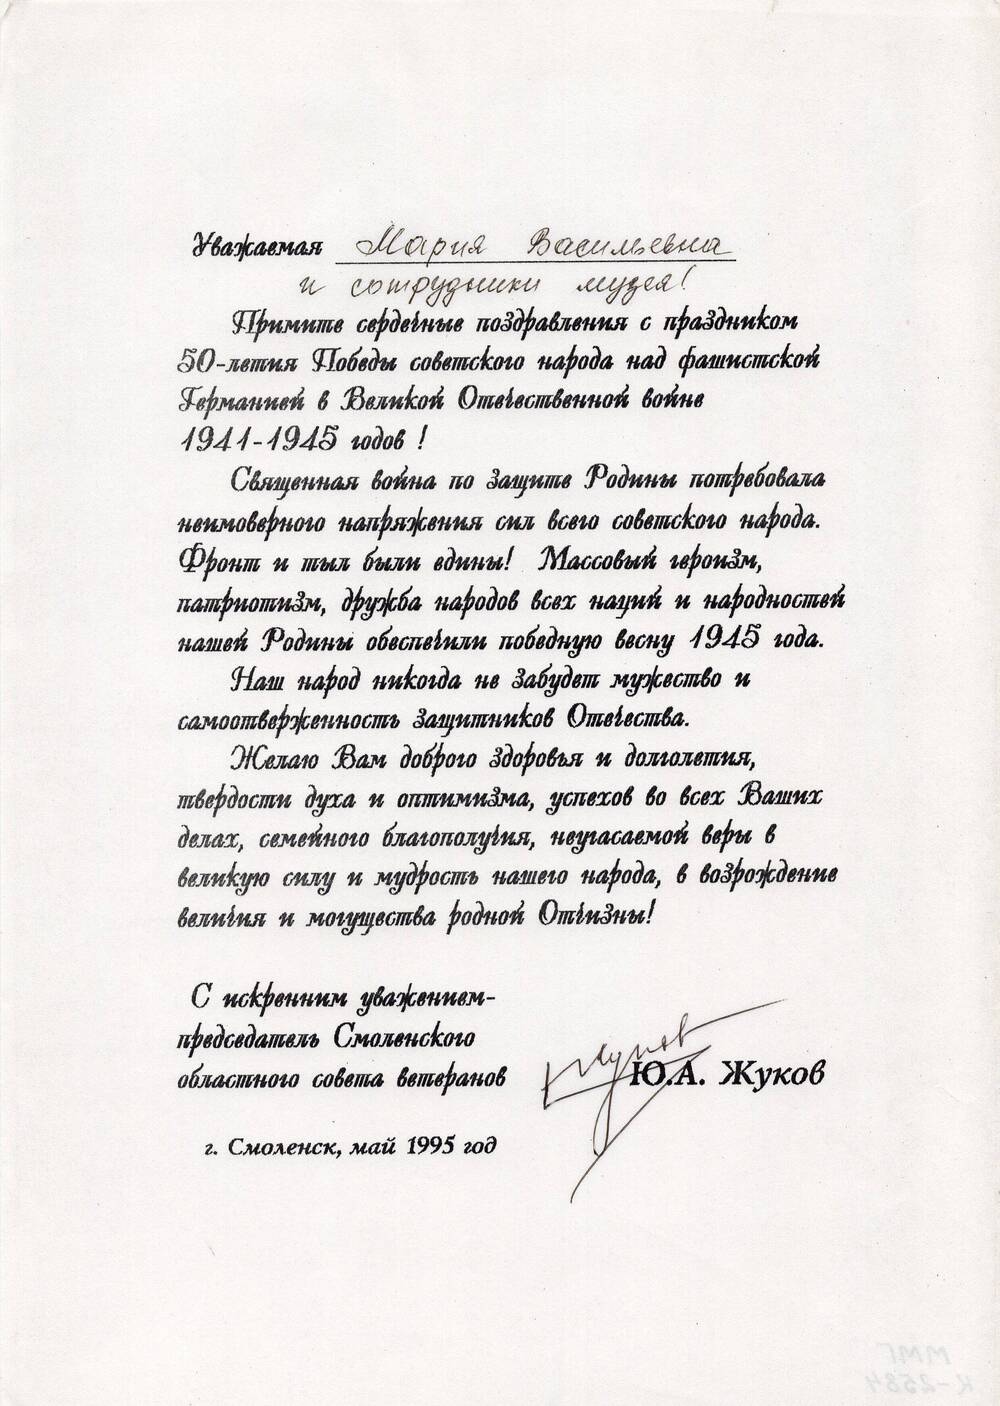 Поздравление председателя Смоленского областного совета ветеранов Ю.А. Жукова мемориальному музею Ю.А. Гагарина с 50-летием Победы.